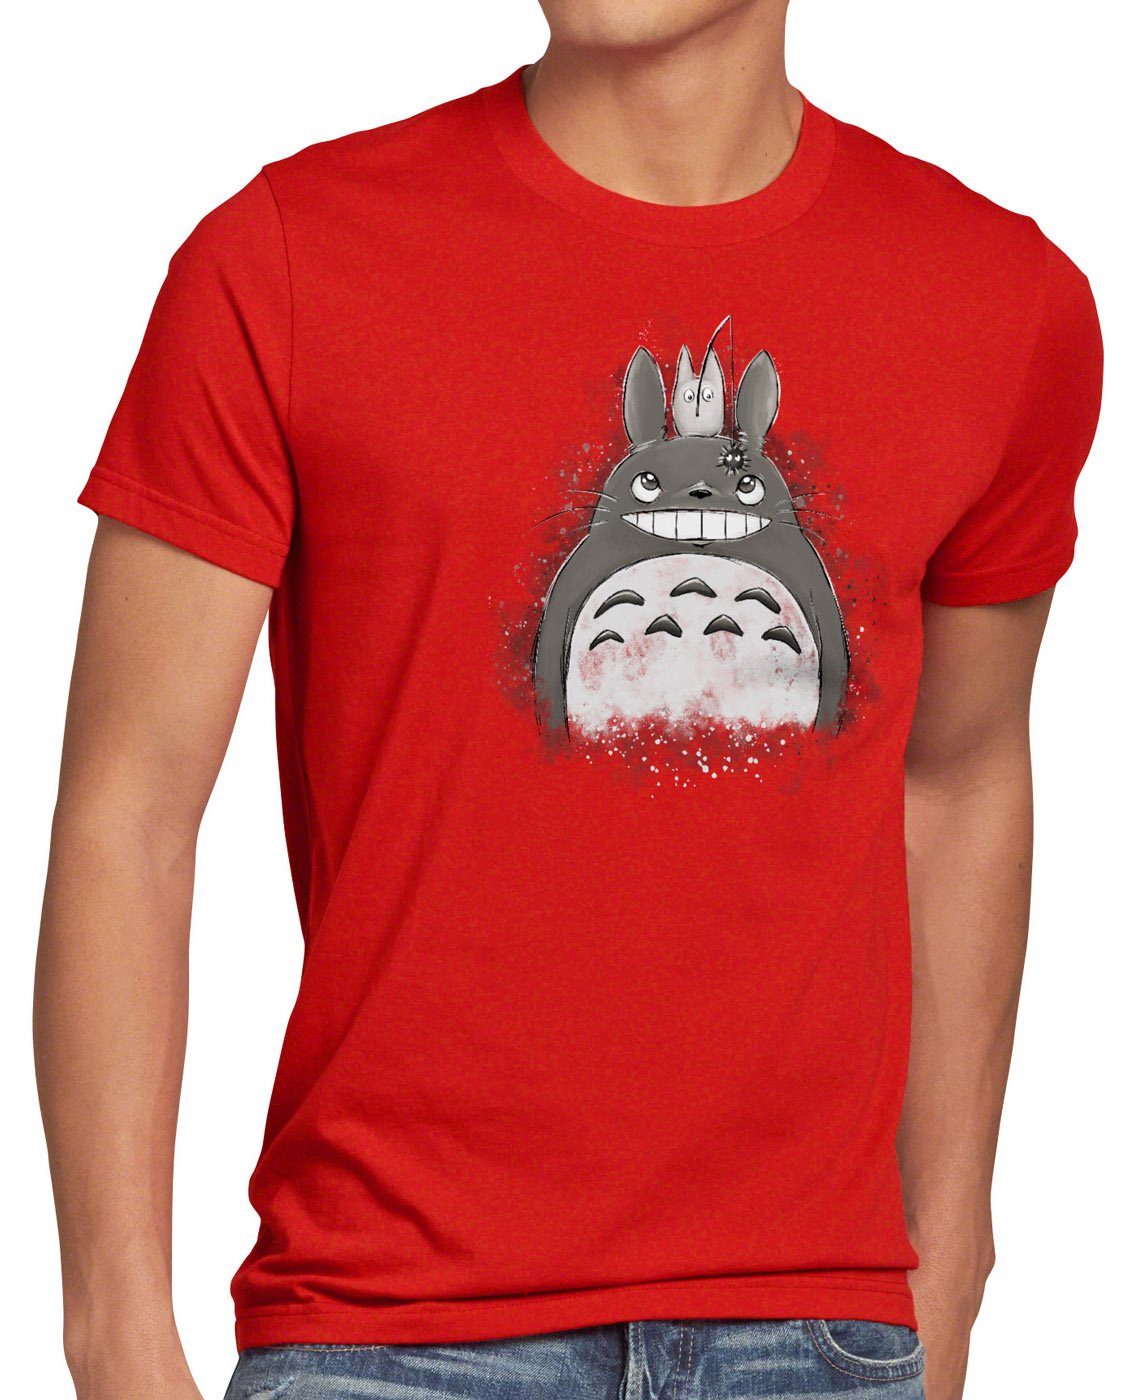 style3 Print-Shirt Herren no tonari rot neko Totoro Duo anime nachbar mein T-Shirt